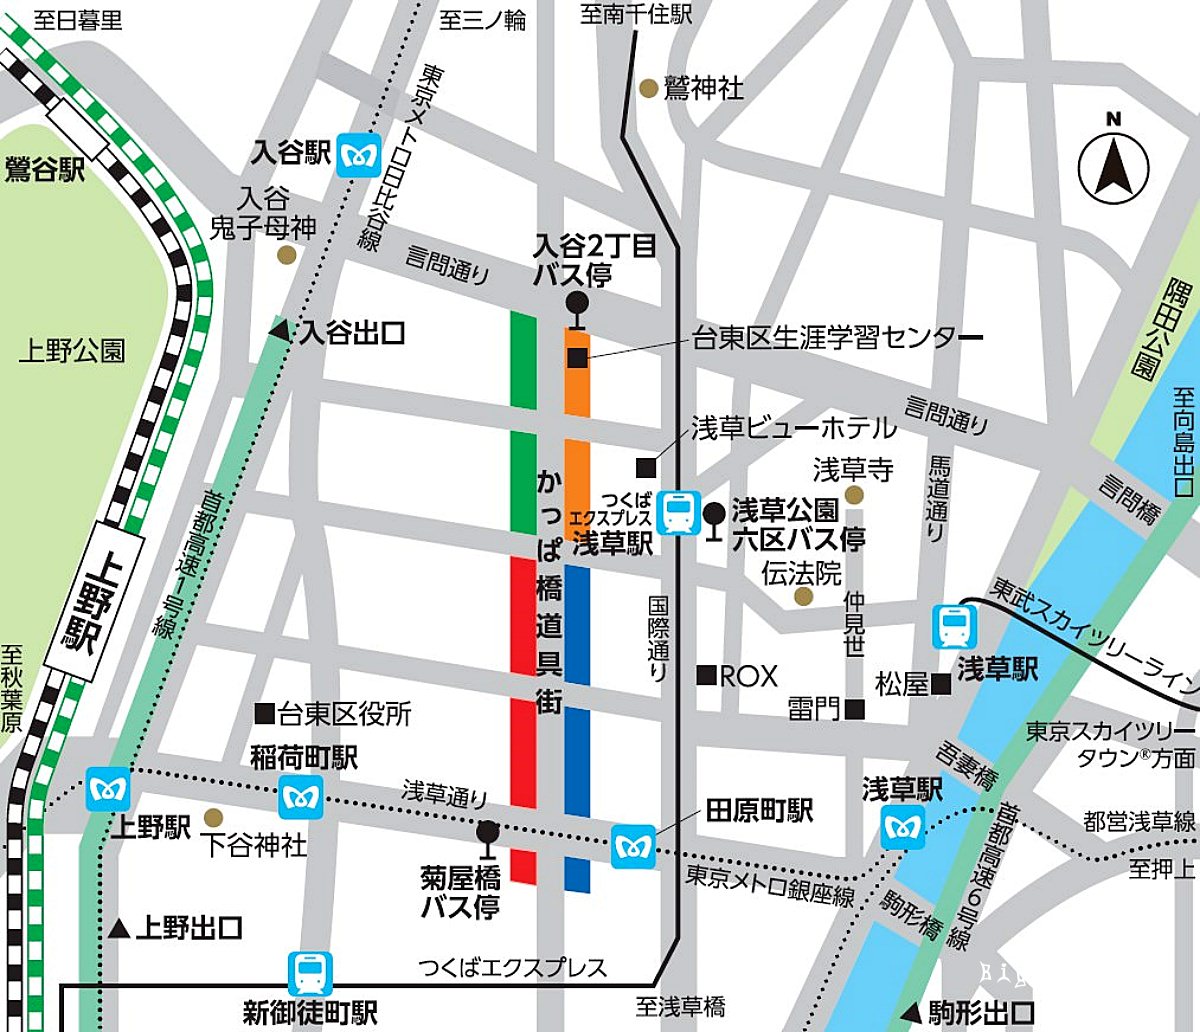 東京合羽橋道具街 地圖